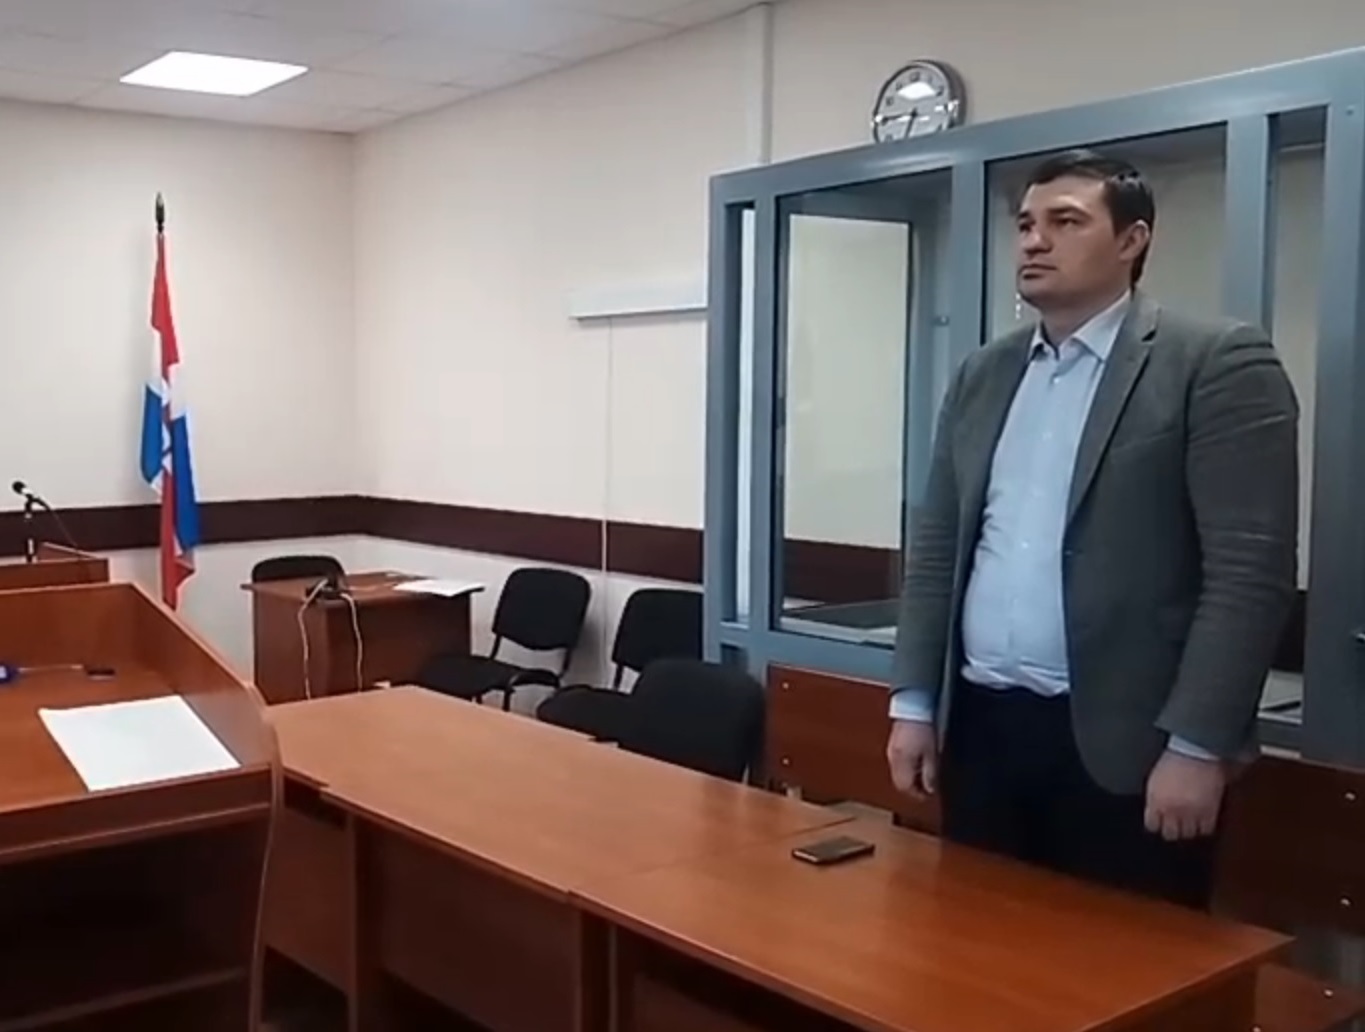 Экс-депутат Александр Телепнев проведет в колонии 2 года и 2 месяца и заплатит 290 тысяч рублей за избиение студента